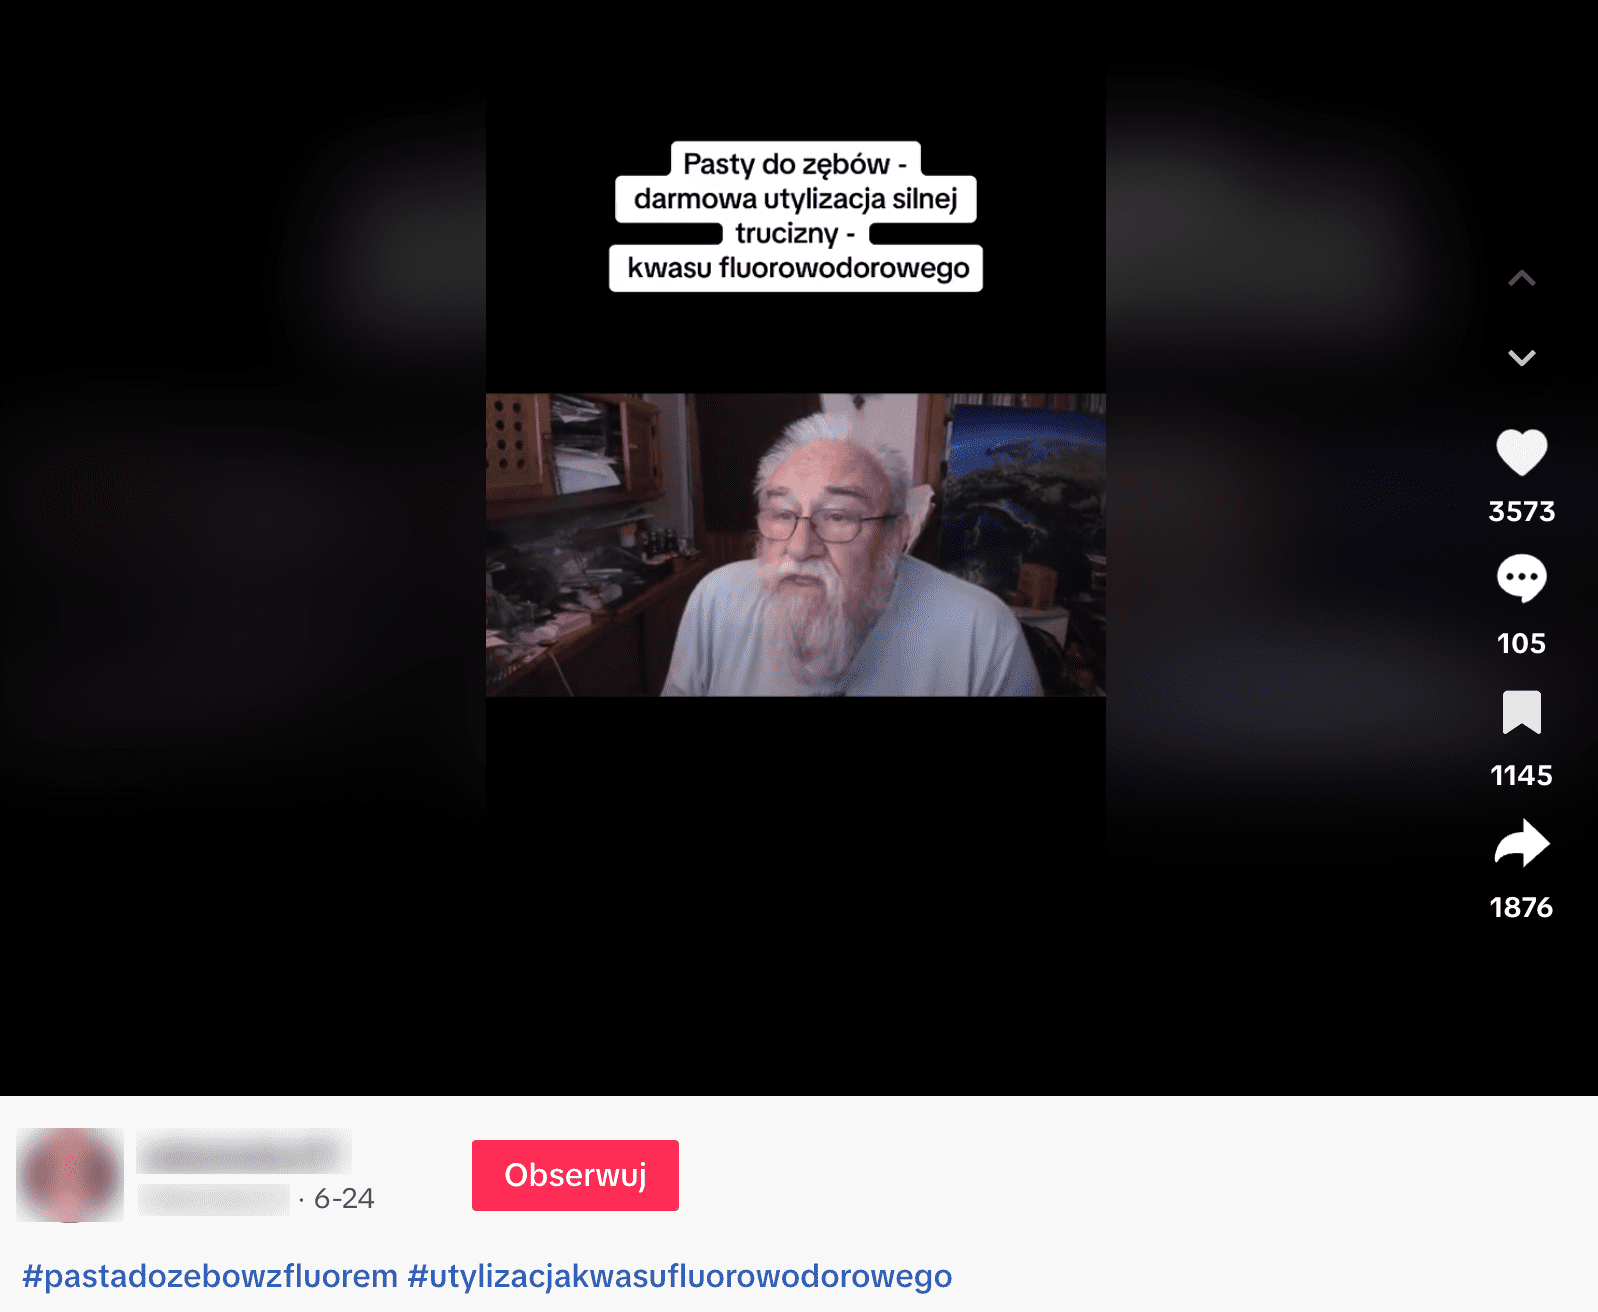 Zrzut ekranu omawianego filmu. Widoczny jest starszy mężczyzna z siwymi włosami i brodą.